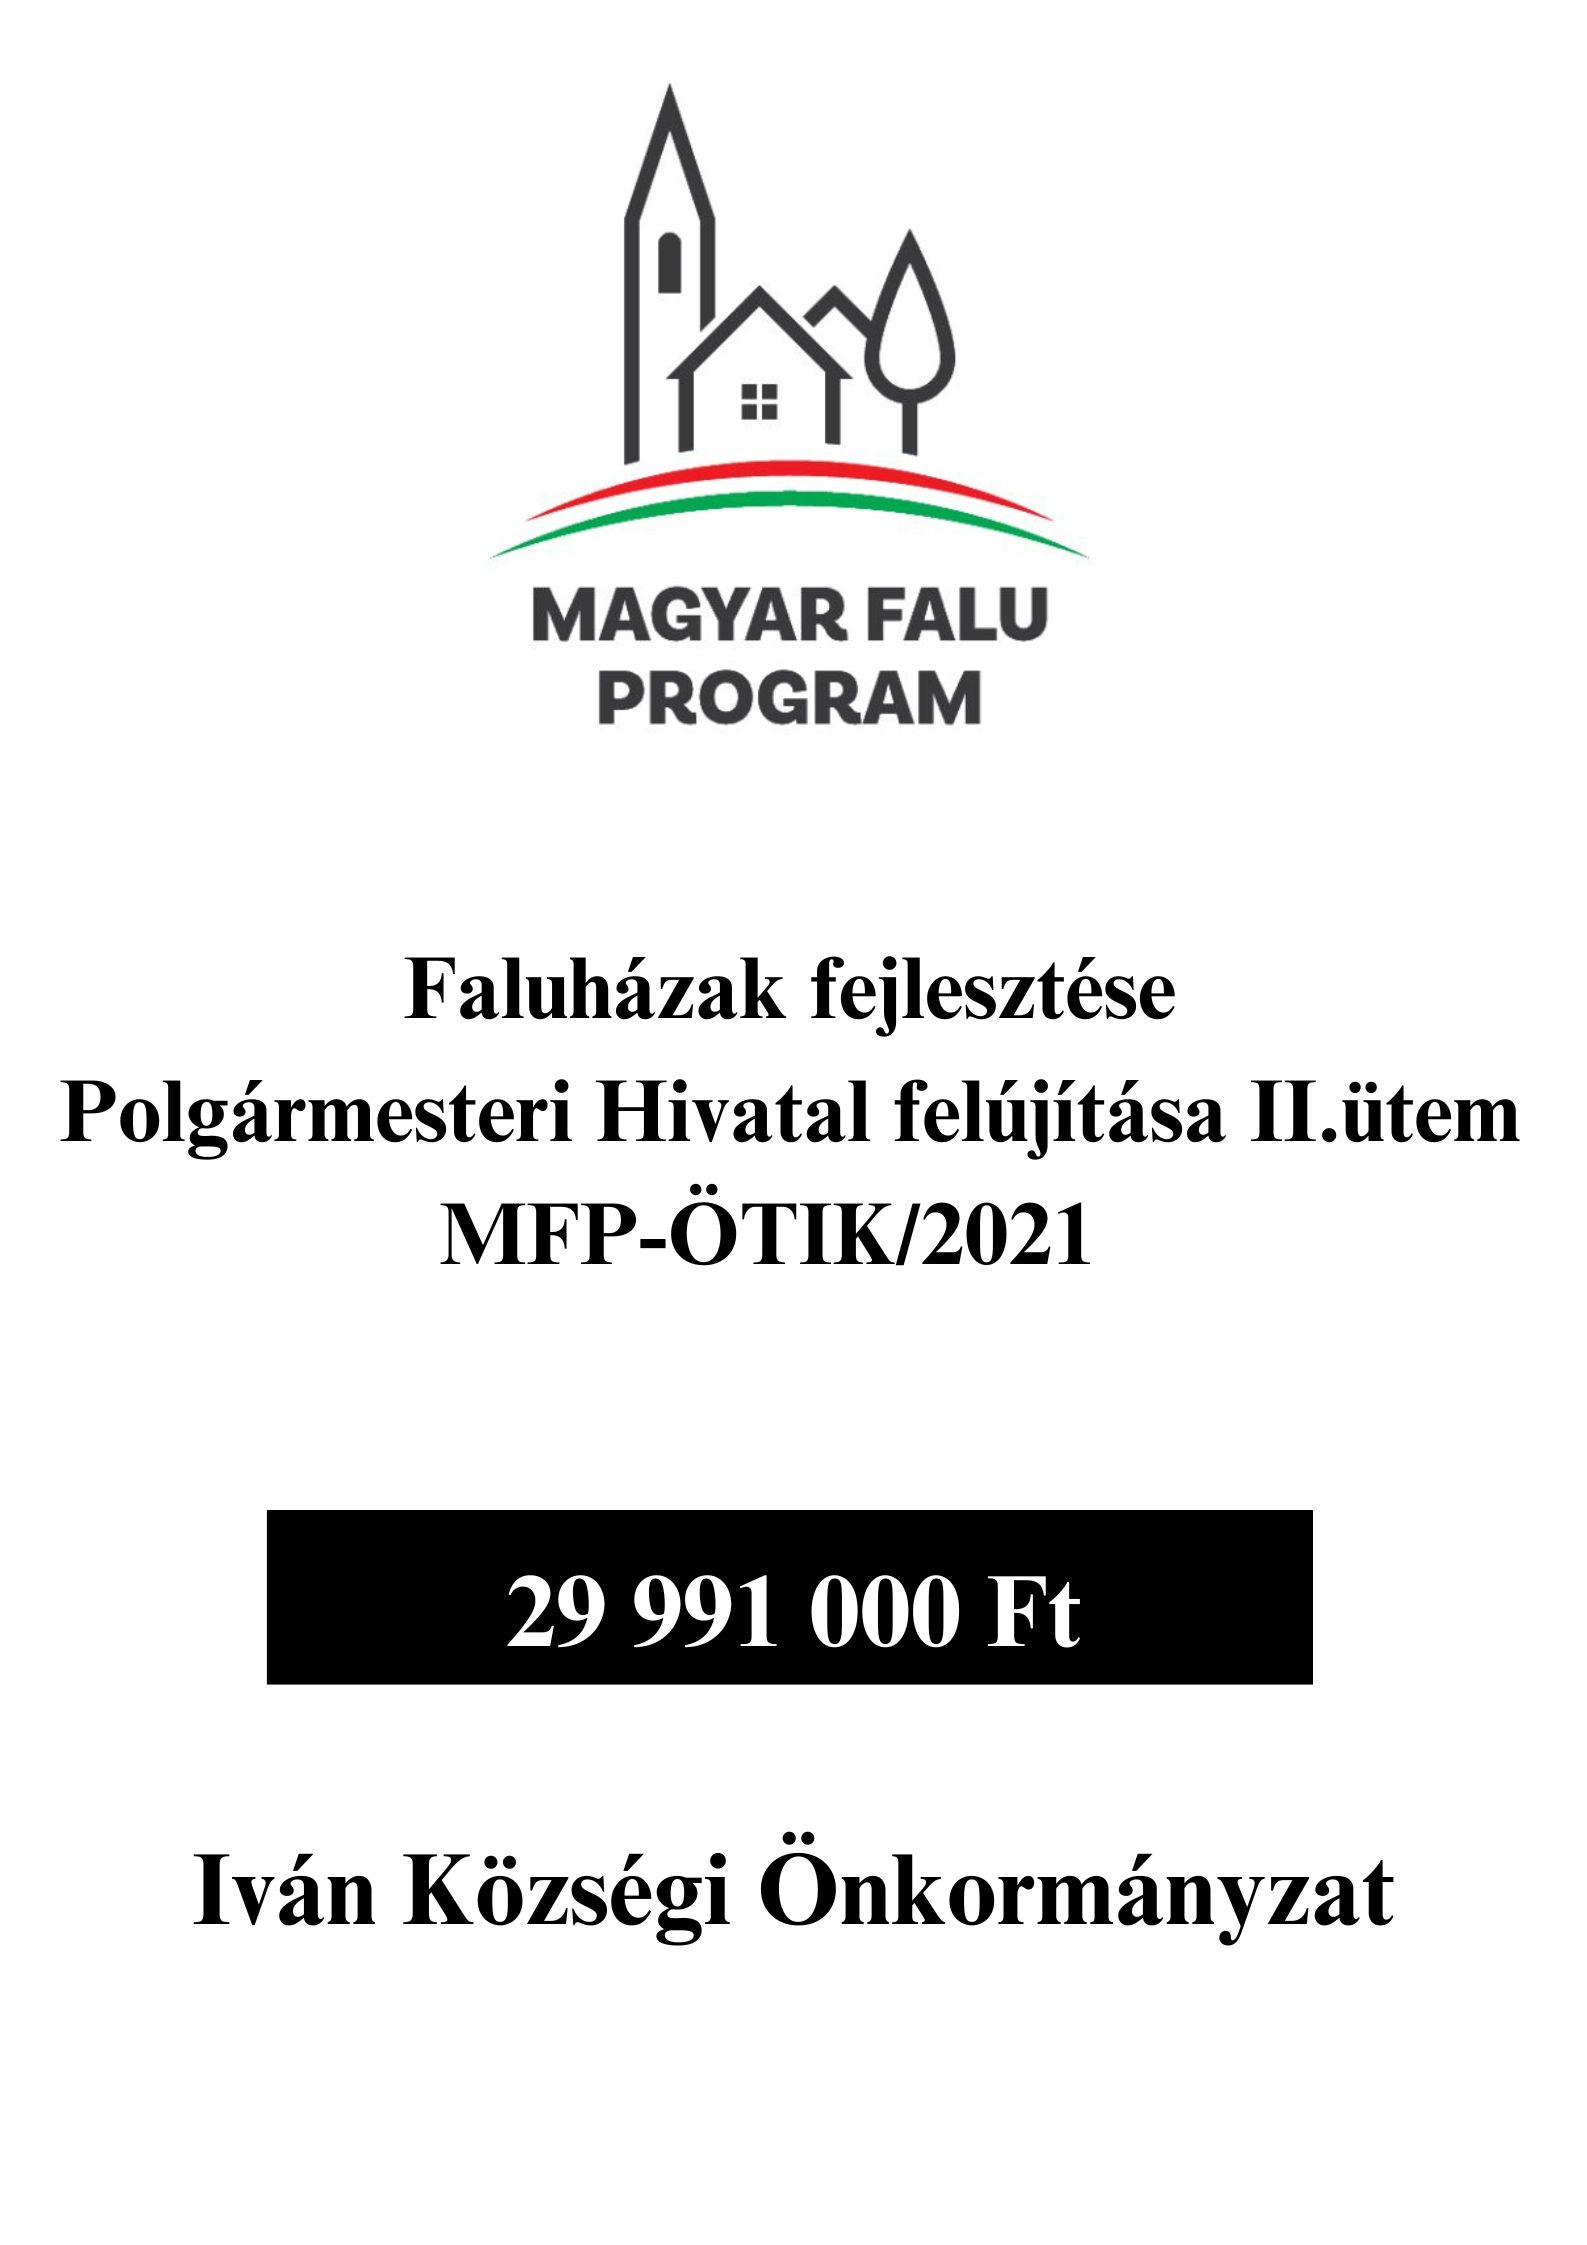 Faluhazak Fejlesztese MFP OTIK 2021